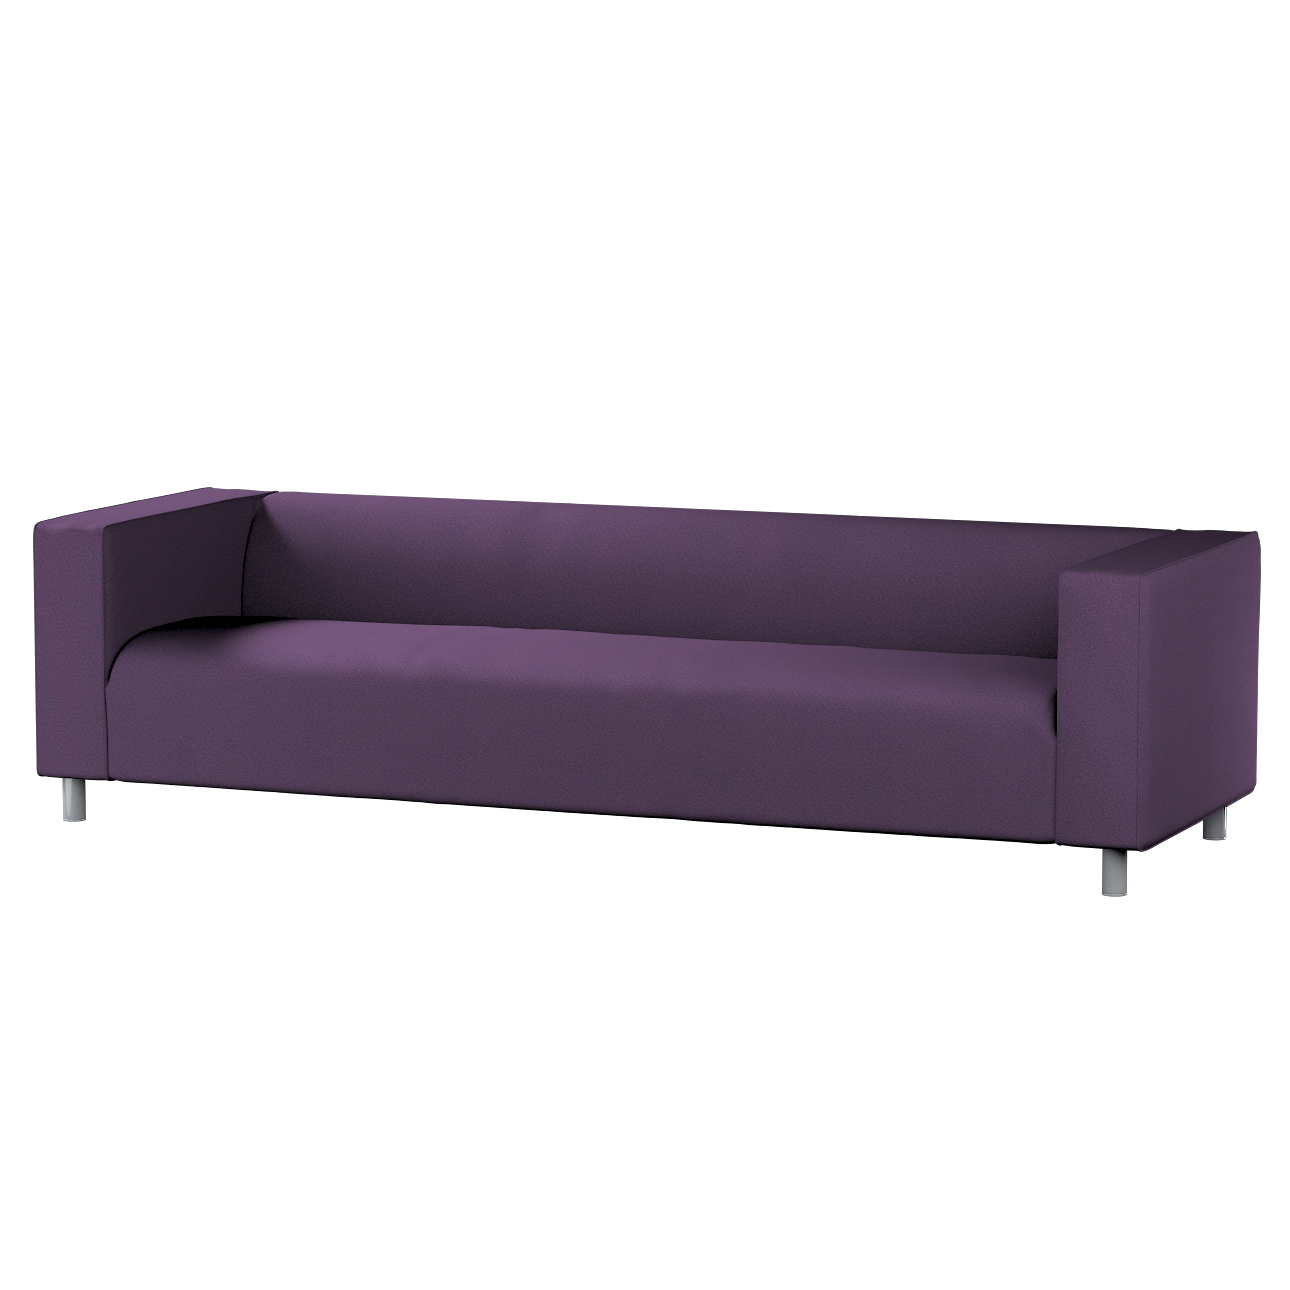 Bezug für Klippan 4-Sitzer Sofa, violett, Bezug für Klippan 4-Sitzer, Etna günstig online kaufen